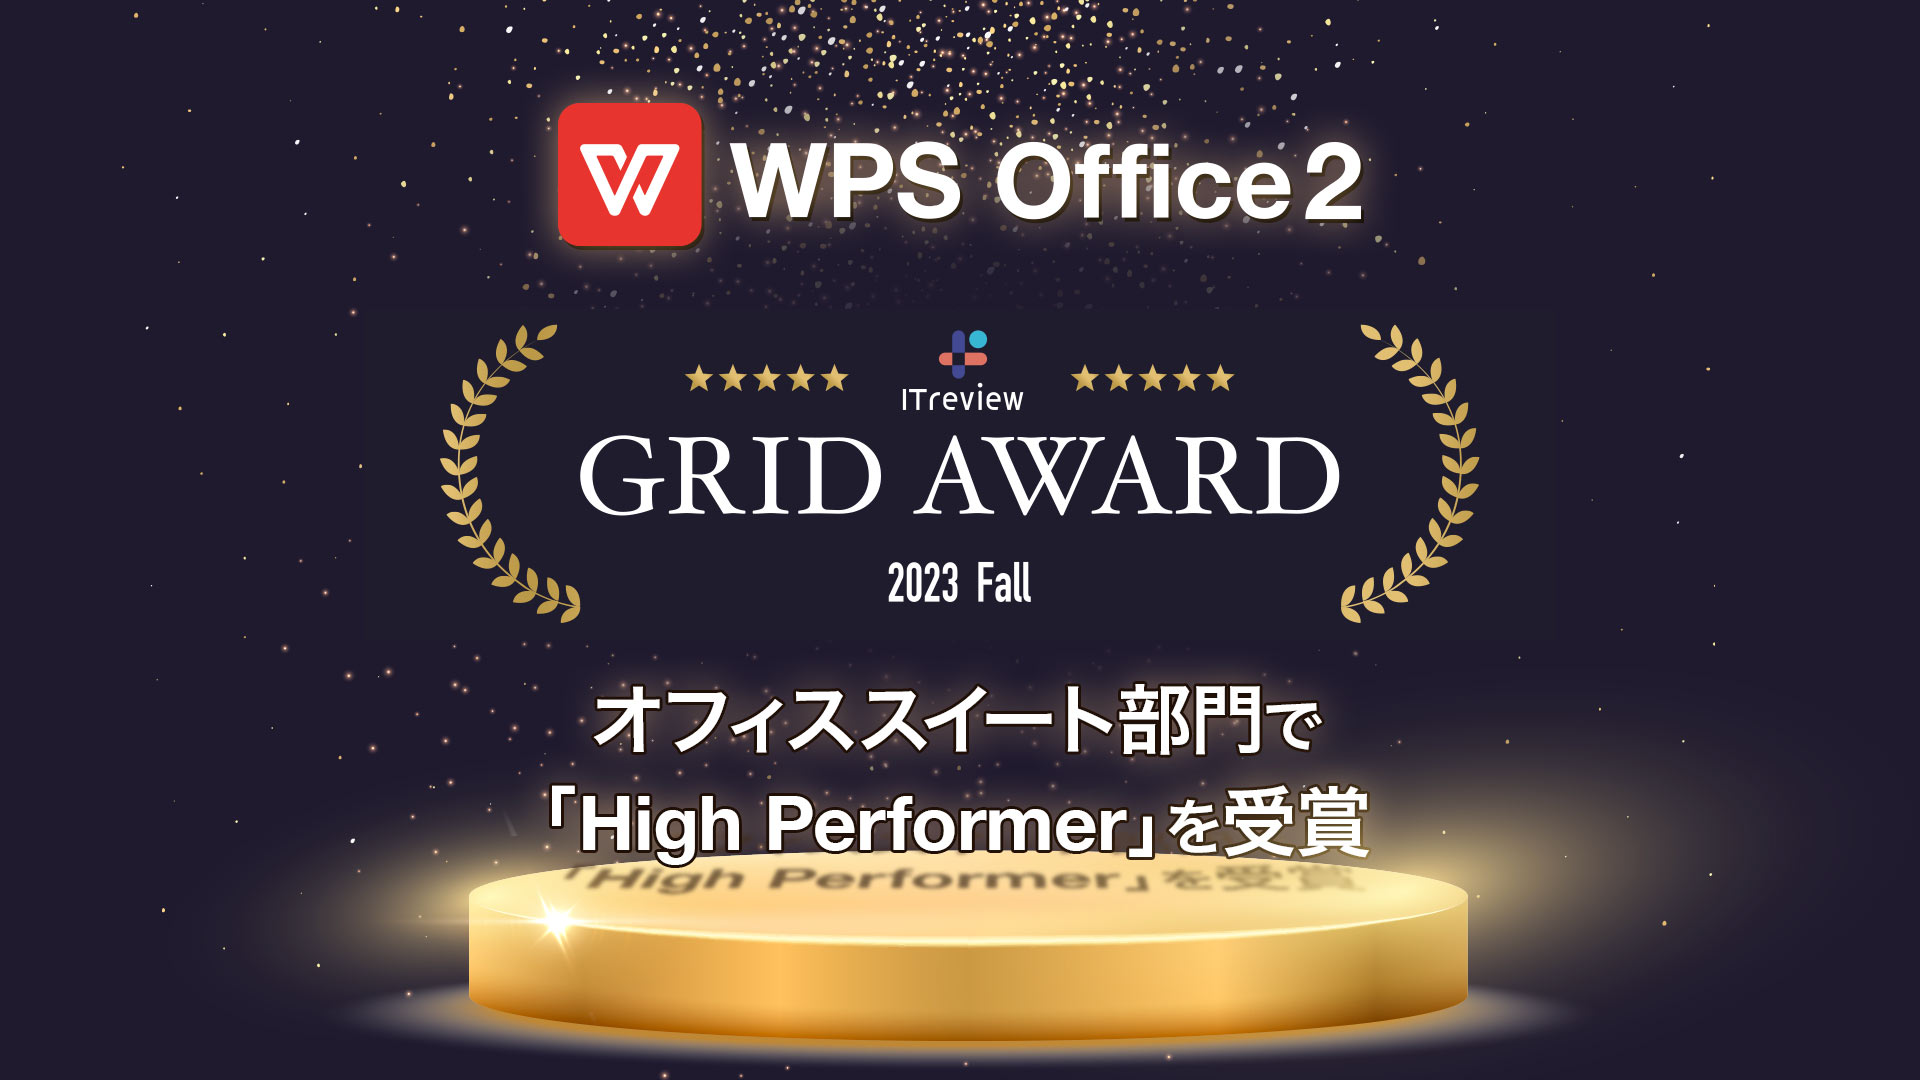 オフィスソフト「WPS Office」、「ITreview Grid Award 2023 Fall」オフィススイート部